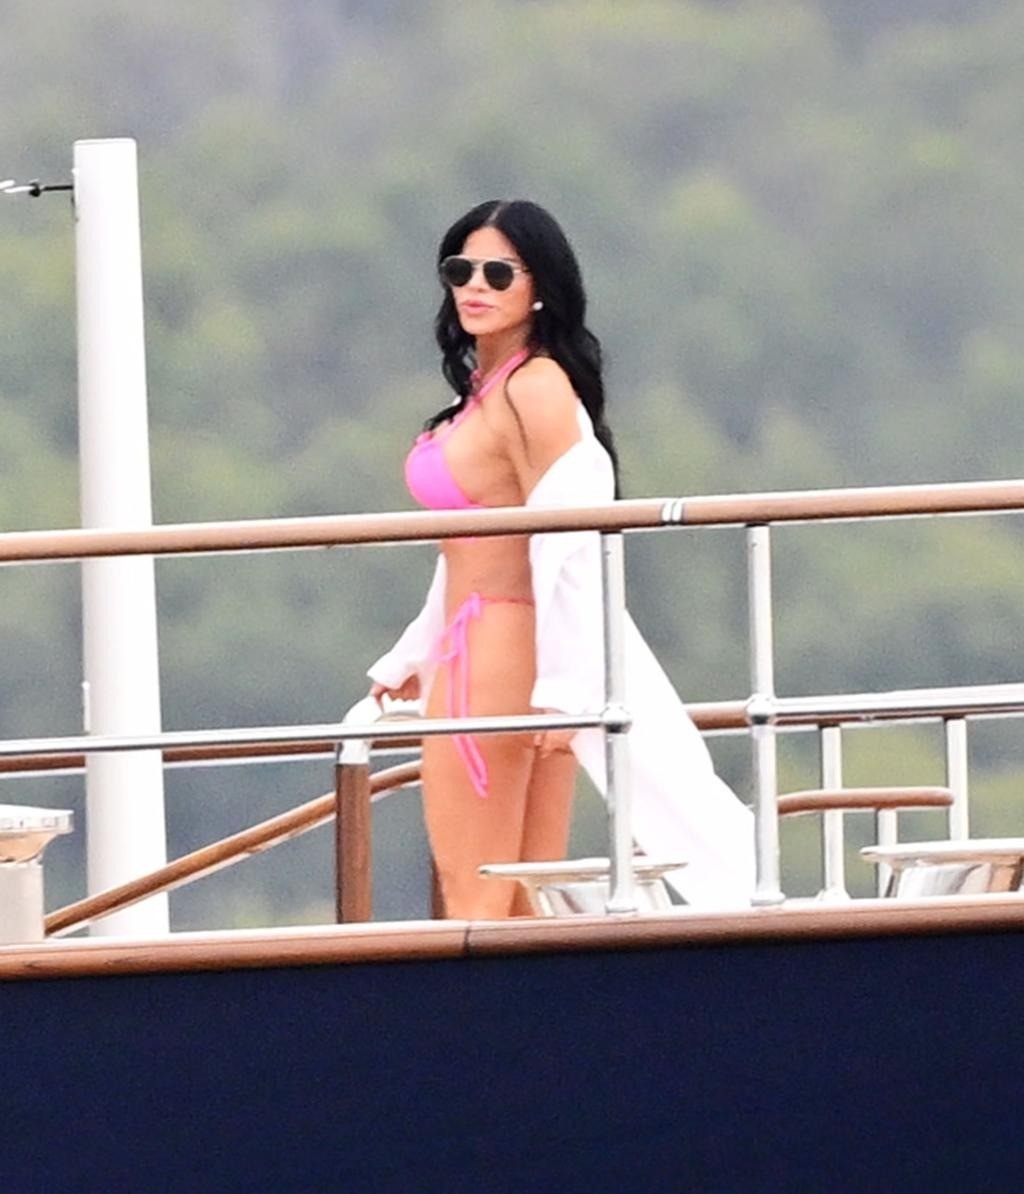 Bạn gái diện bikini cùng tỷ phú Jeff Bezos trên siêu du thuyền 500 triệu USD - Ảnh 3.